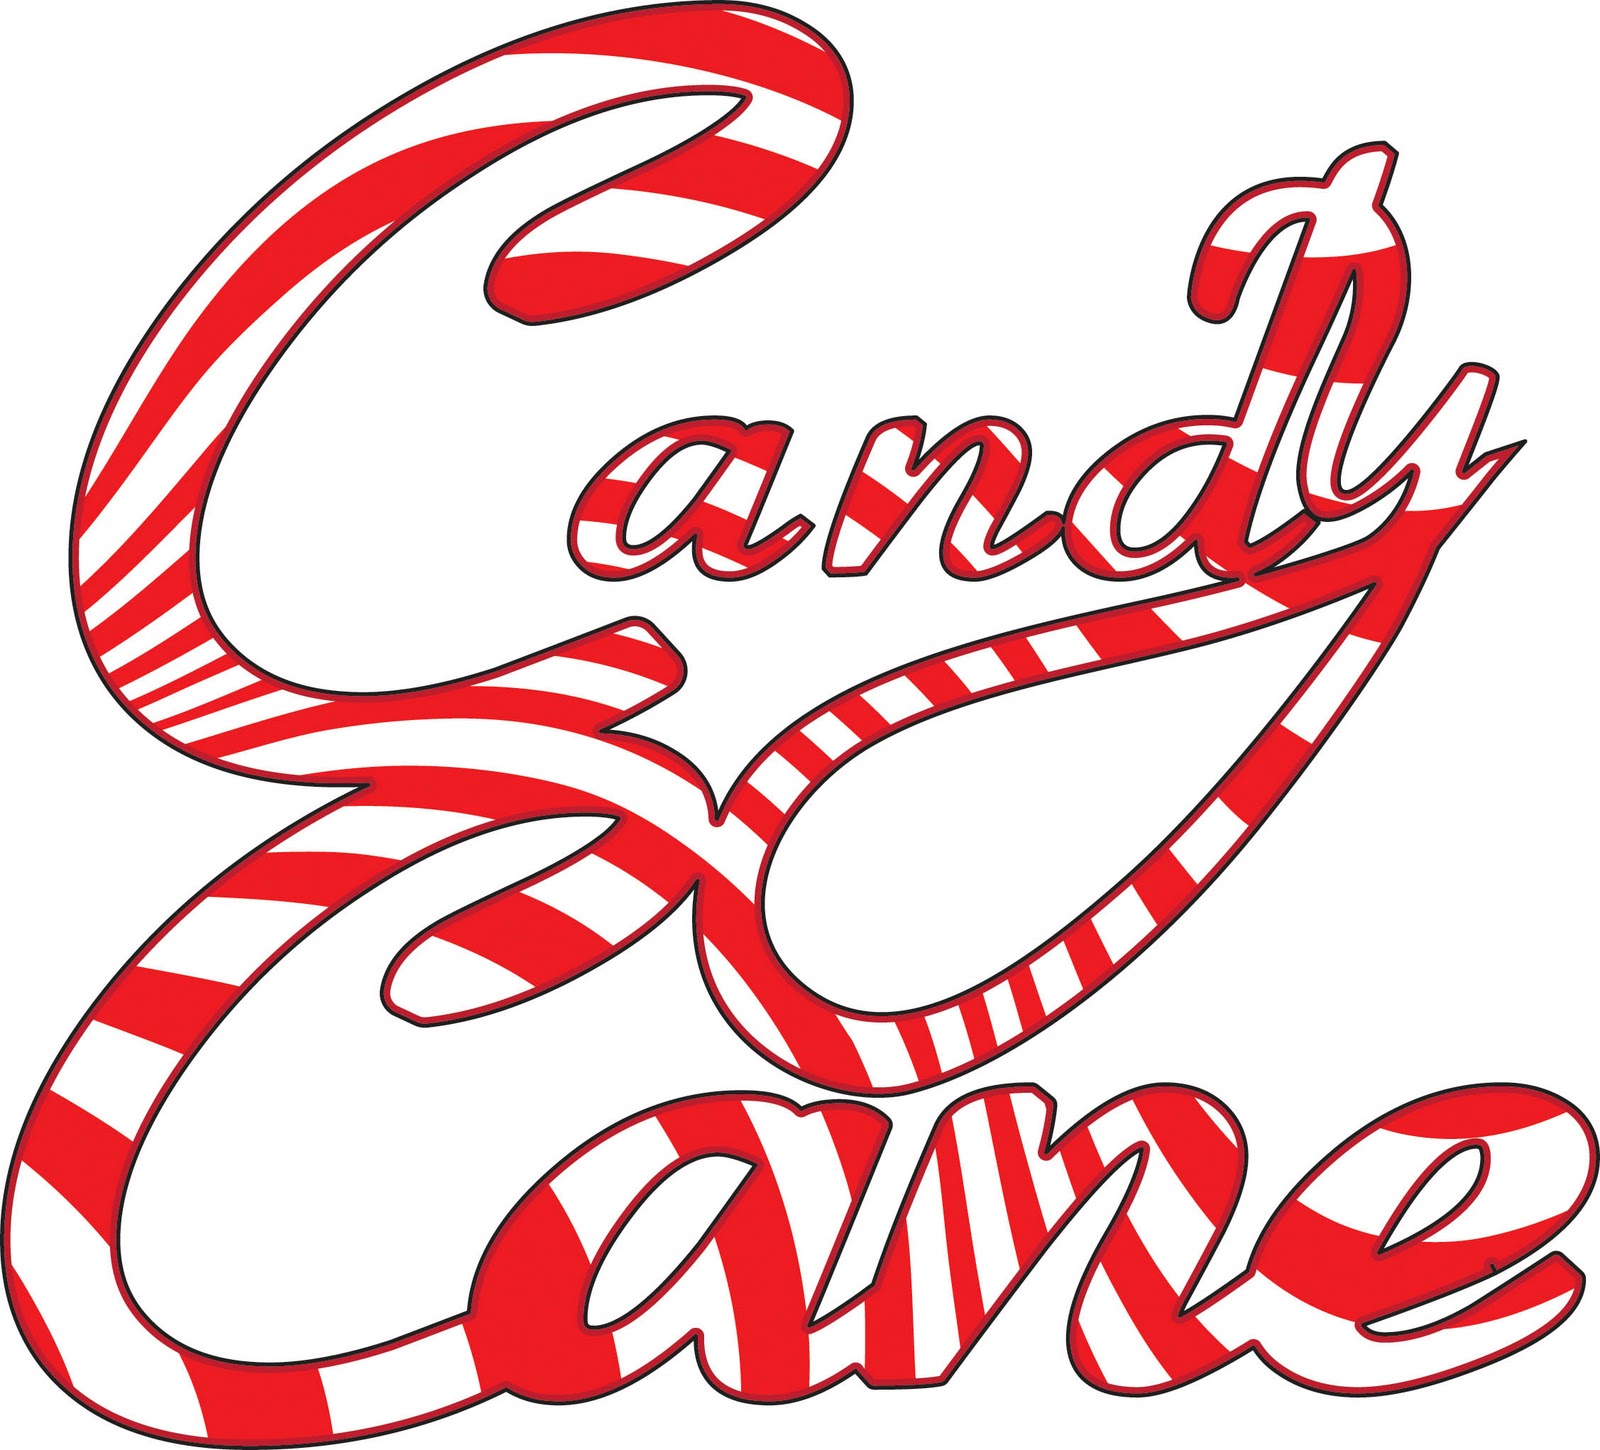 Candy cane border clip art cl - Candy Cane Border Clip Art